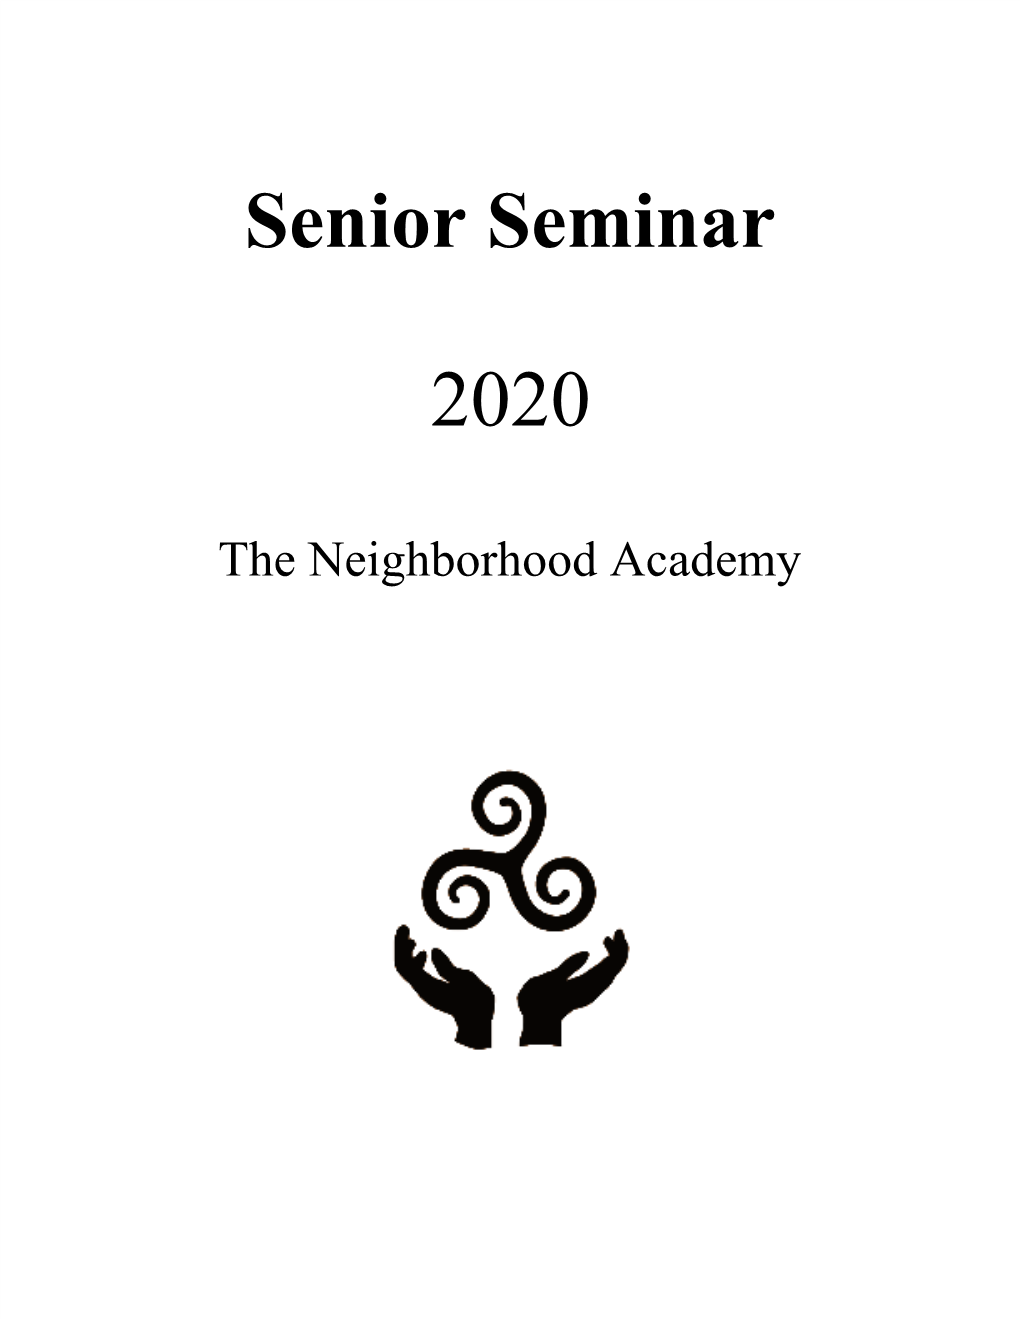 Senior Seminar 2020